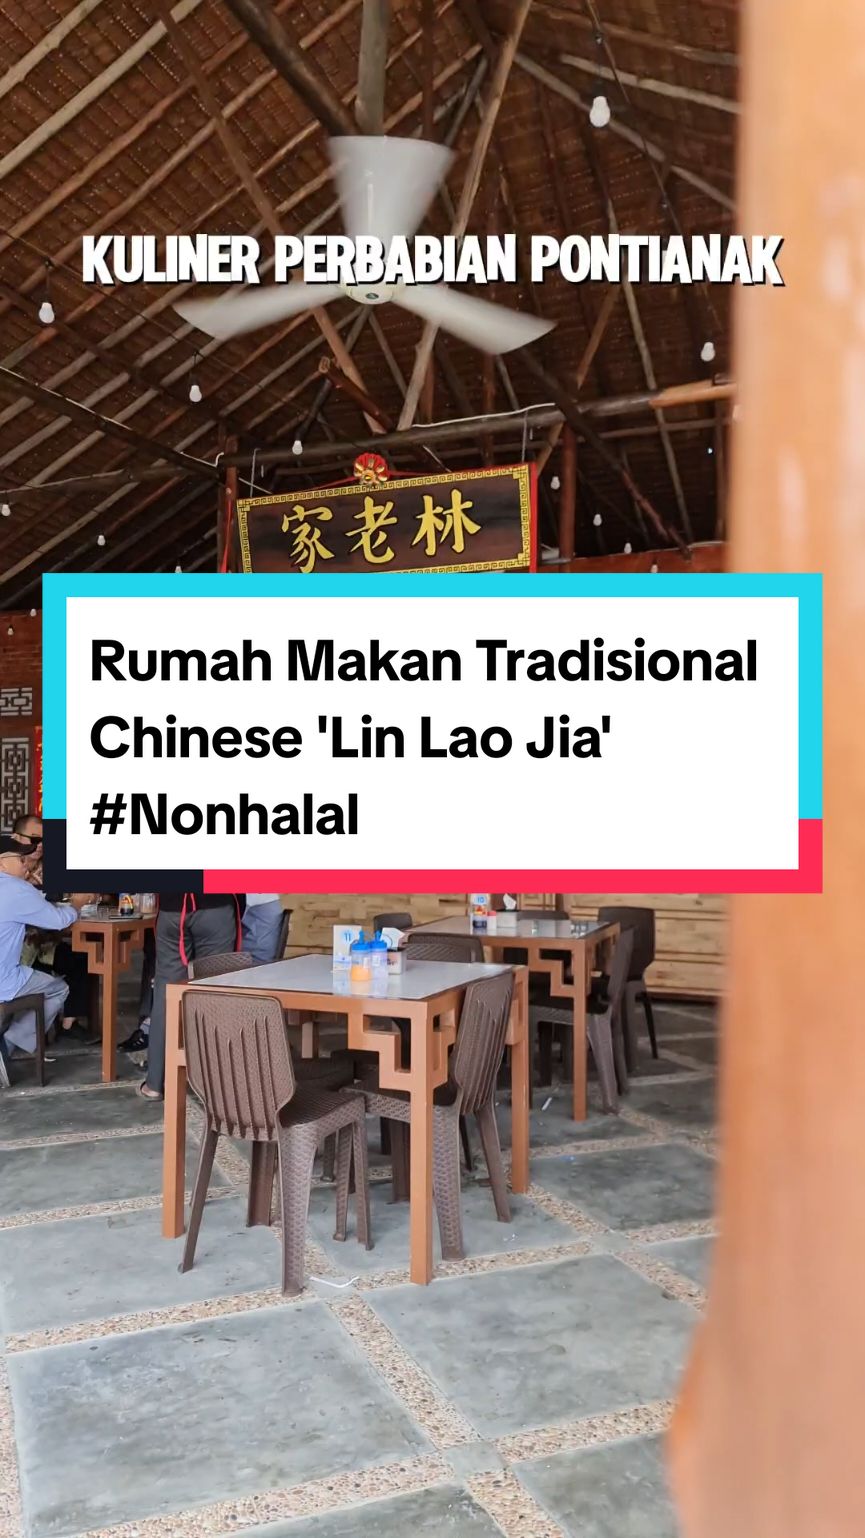 RUMAH MAKAN TRADISIONAL CHINESE FOOD - LIN LAO JIA!! #Nonhalal Halo guys,nih kopon rekomendasikan kalian tempat kuliner baru lagi dan tempat nya hiddengem,jadi tempat kuliner perbabian satu ini berkonsep rumah tradisional chinese dengan suasana chinese style,dan tersedia menu masakan dan cemilan yang mengandung perbabian ya guys!! 💈LIN LAO JIA  #Nonhalal ♨️ Buka Setiap Hari (Hari Selasa Tutup) ♨️ Jam Operasional Buka Pertama Jam 09.00 s.d 14.00 Istirahat Jam 14.00 s.d 16.00 Buka Kedua 16.00 s.d 19.00 ♨️ Menu Mengandung Babi ♨️ Kuliner Baru & Tersembunyi ♨️ Masakan Tipikal yang gak terlalu Asin berlebih . . 📍Lokasi : Jl. Purnama 1 Pontianak (Masuk Jl. Karya Tani -/+ 1km Posisi Sebelah Kiri) . . #kulinerbarupontianak #linlaojiapontianak #linlaojia #kulinerperbabianpontianak #kulinerperbabian #rumahmakantradisionalchinese #kulinerpontianak #pontianak #lokasilinlaojia #rumahmakanchinesefood #kulinernonhalal #nonhalal #pontianak #wajibcoba #rekomendasikulinerpontianak #hiddengempontianak #hiddengems  